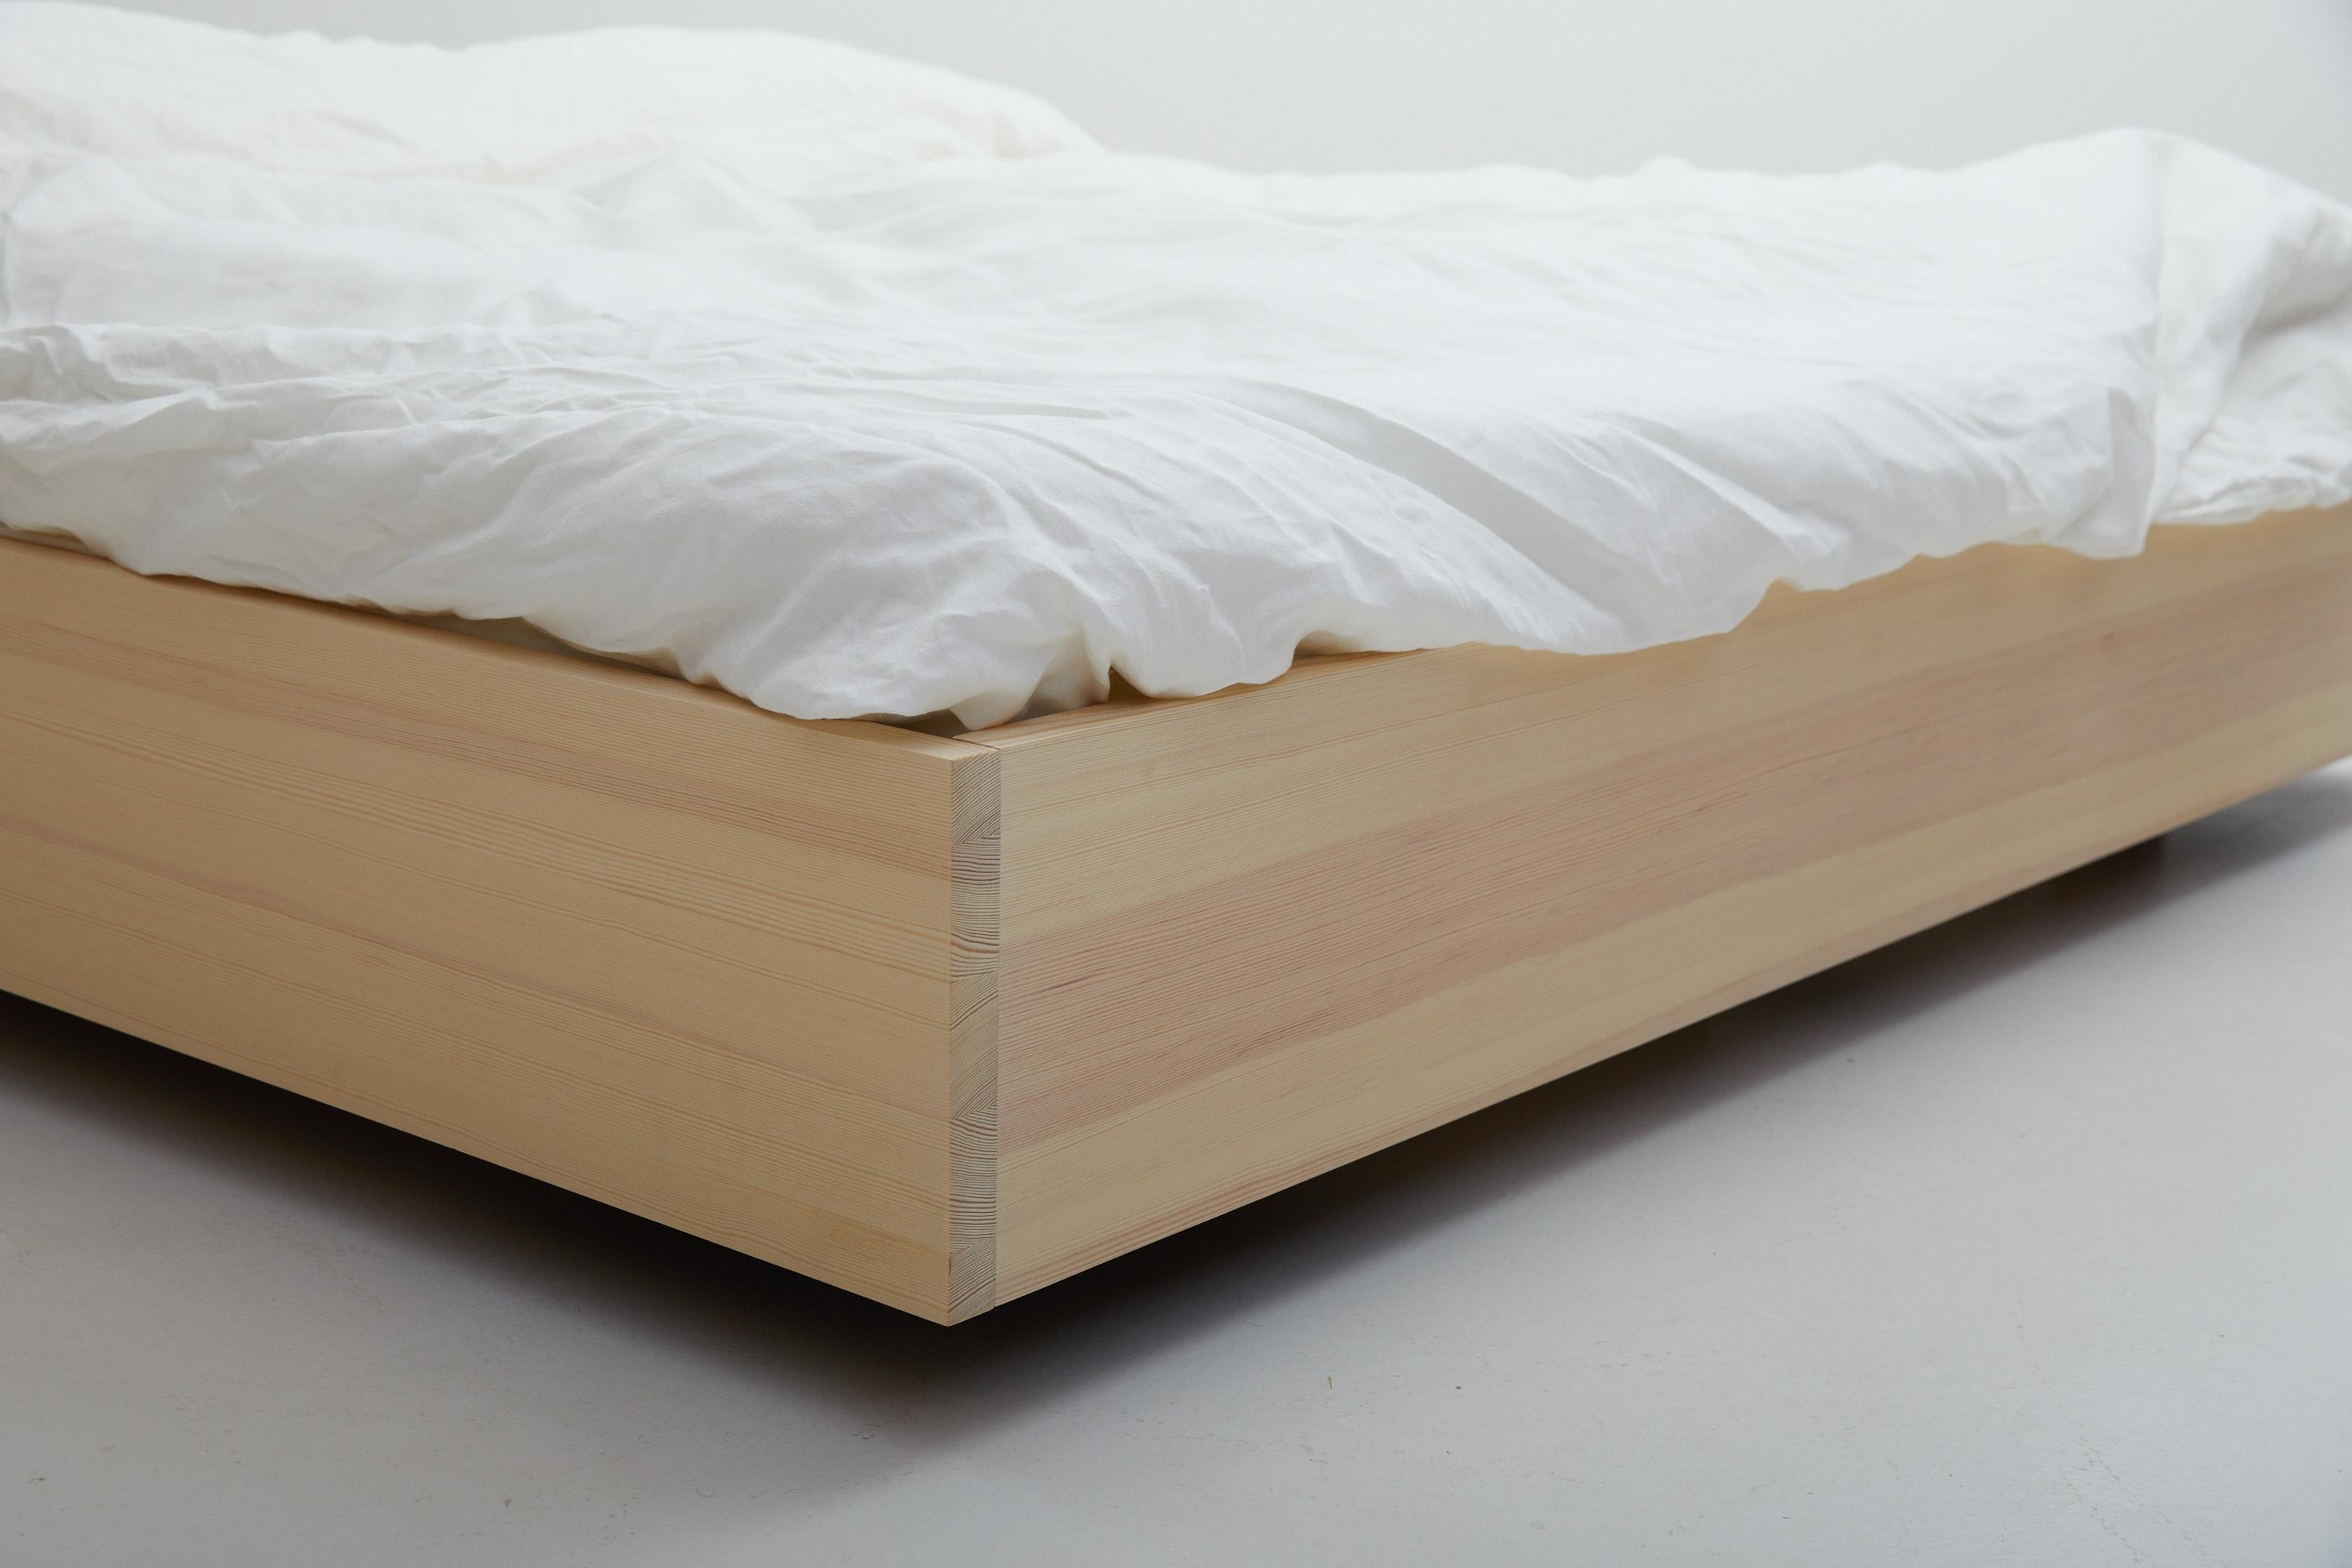 Das schwebende Bett

Das Gefühl, frei zu schweben, inspirierte den Möbelschreiner Axel Wannberg zum Entwurf des Schwebebettes - einem besonderen Schlafzimmermöbel aus massiver schwedischer Kiefer.

Kiefernholz ist ein schönes und vielseitiges